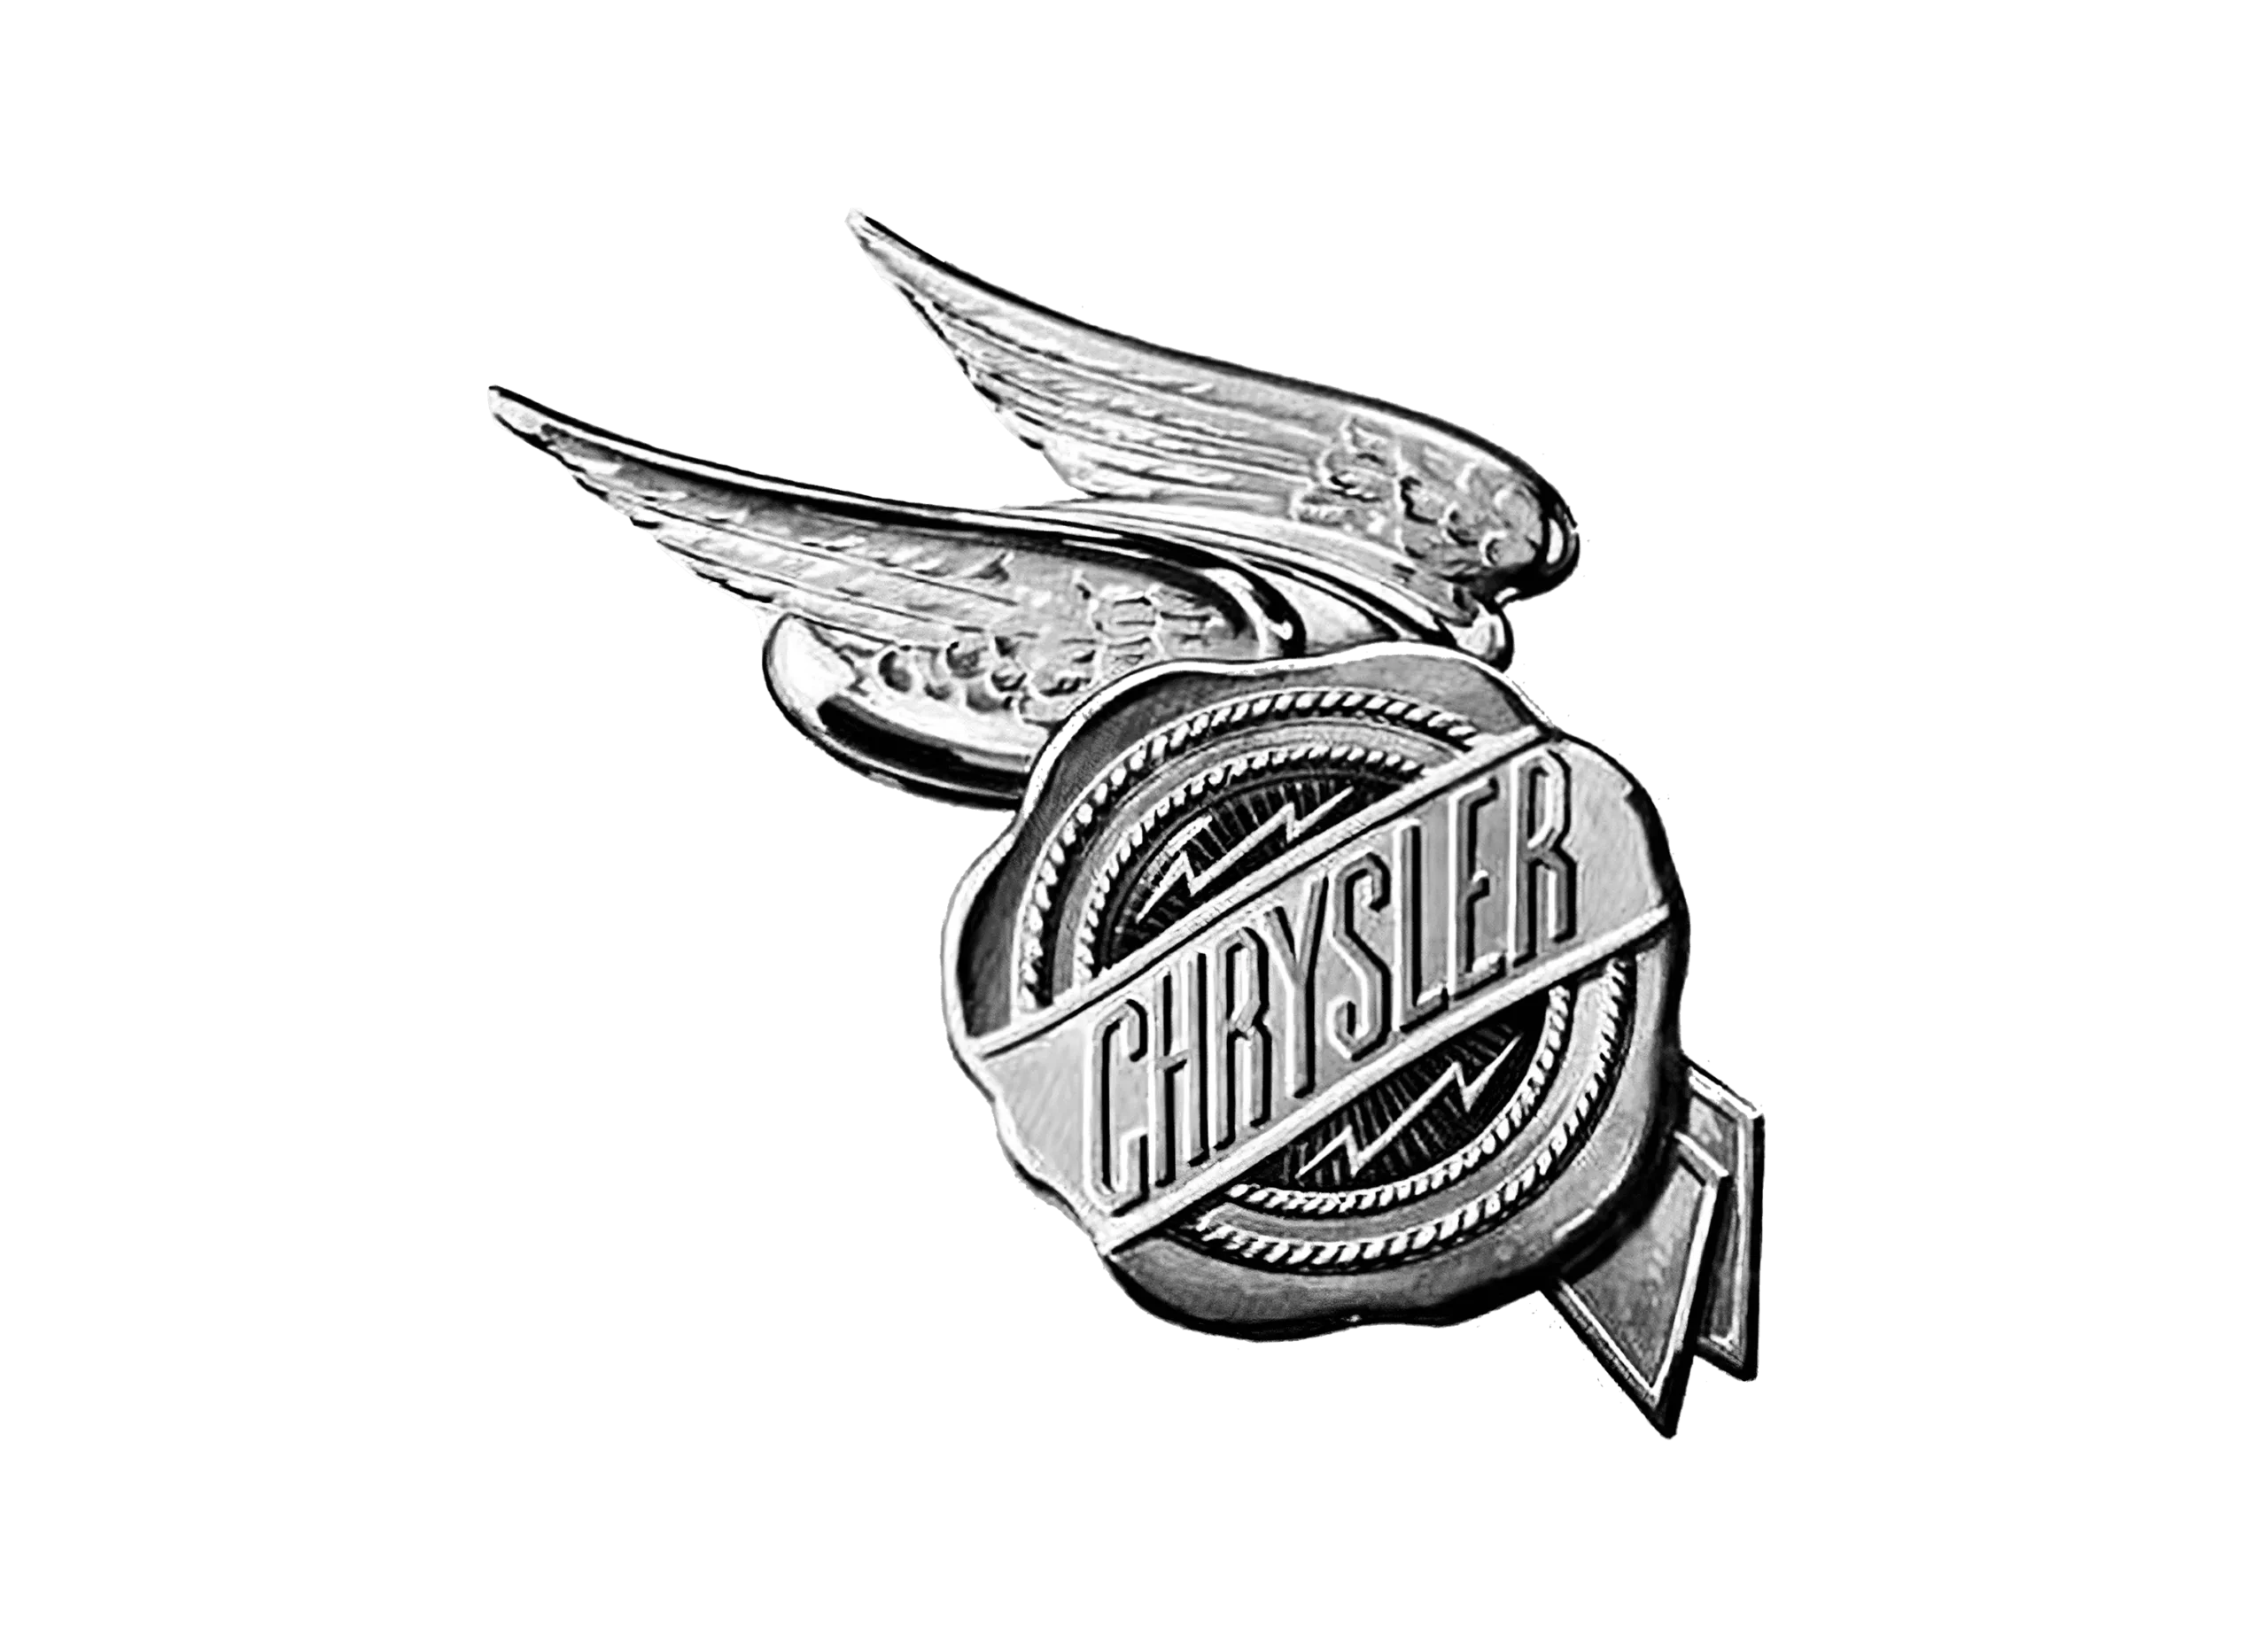 Chrysler logo 1925-1930